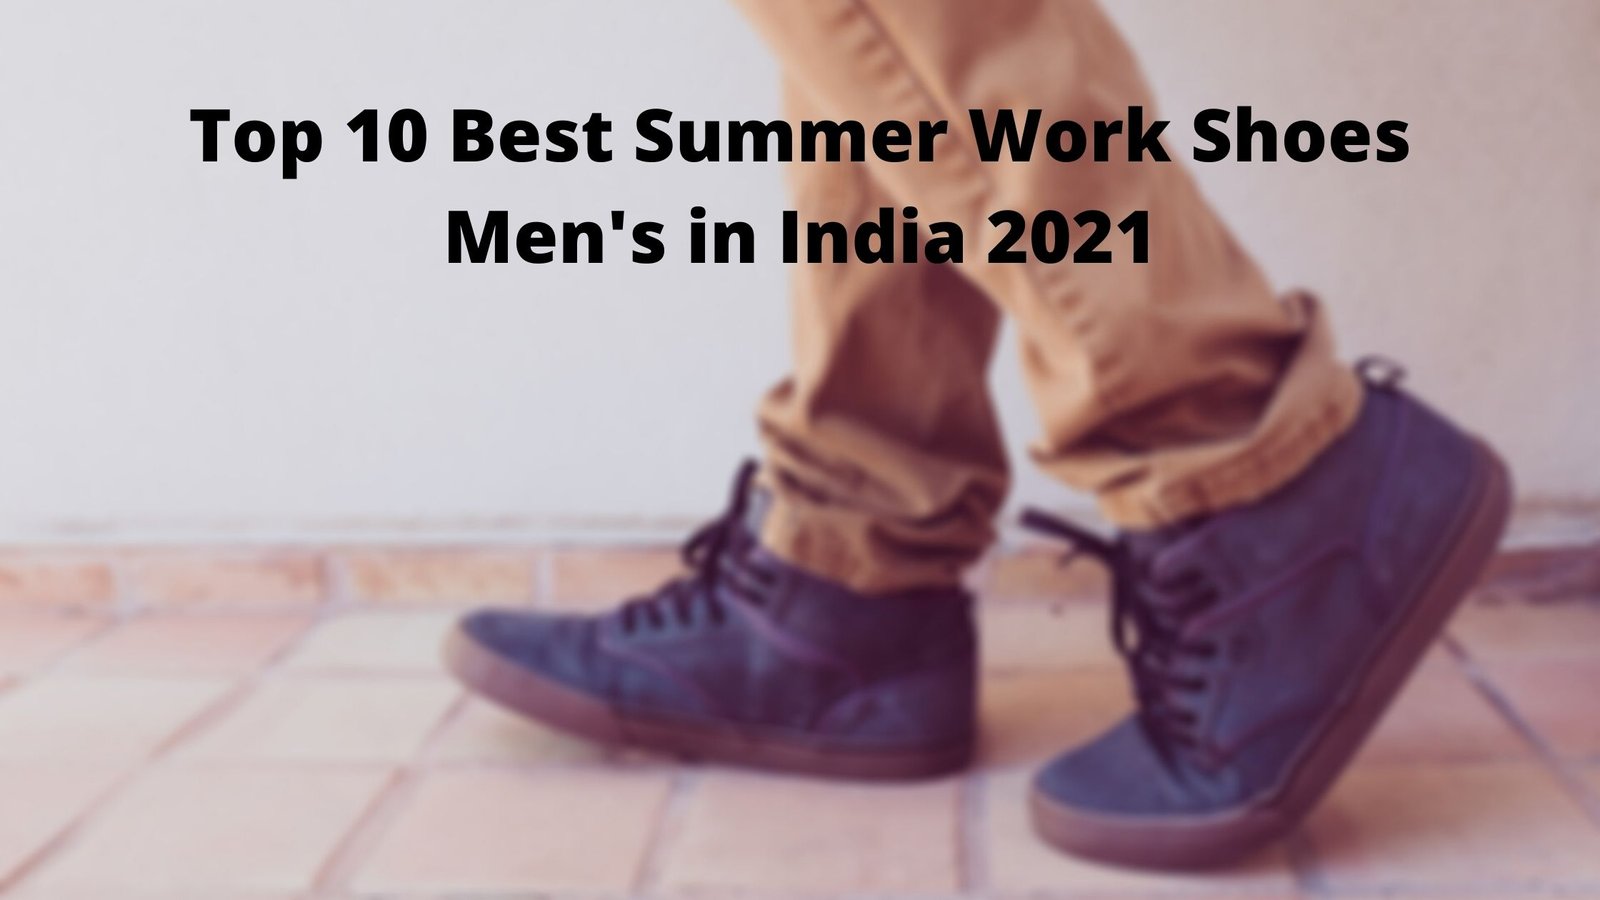 Top 10 Best Summer Work Shoes Men's in India 2021